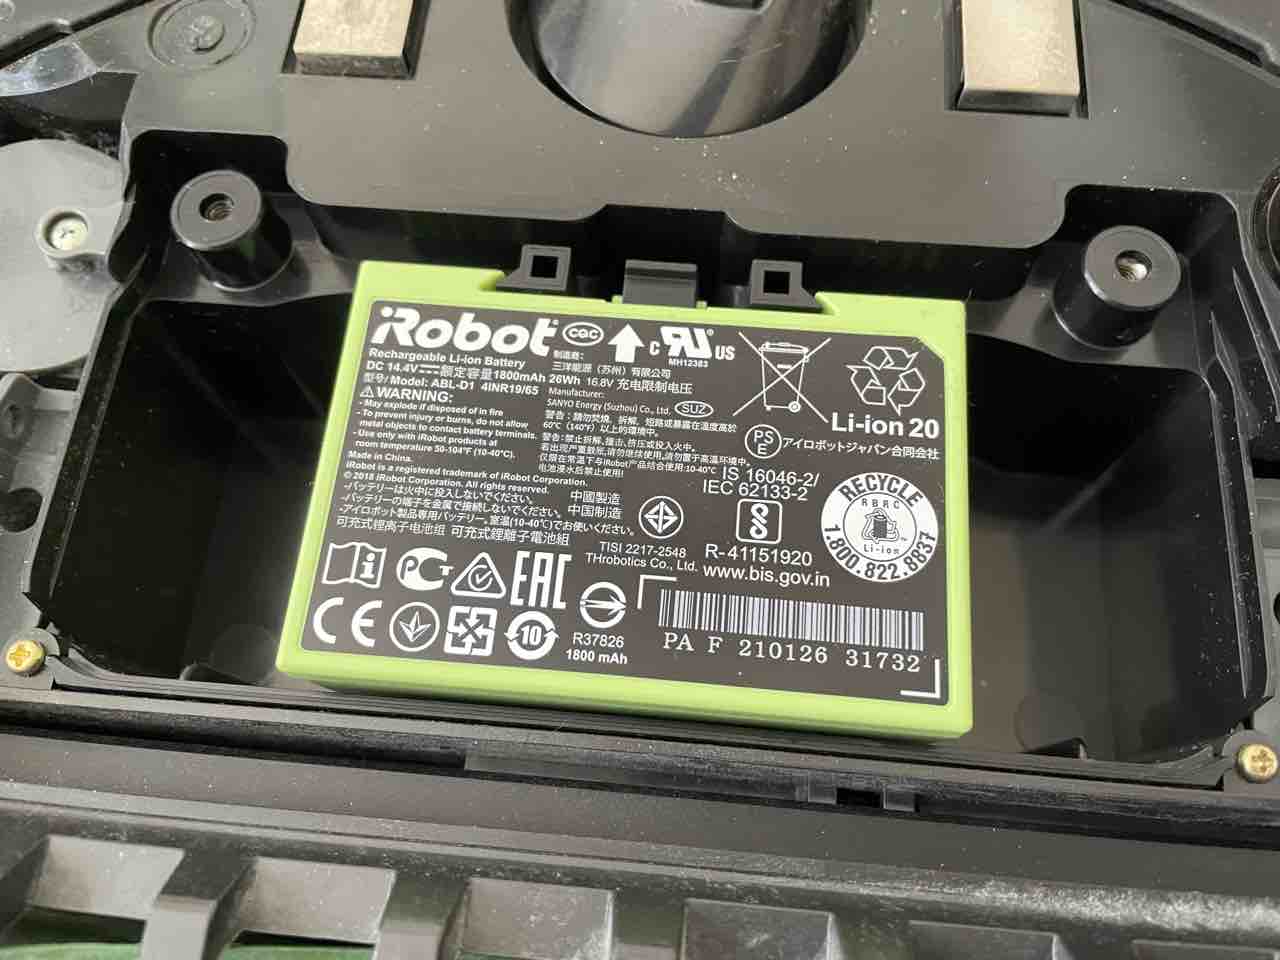 IROBOT ルンバ I7 バッテリー交換必要 - 掃除機